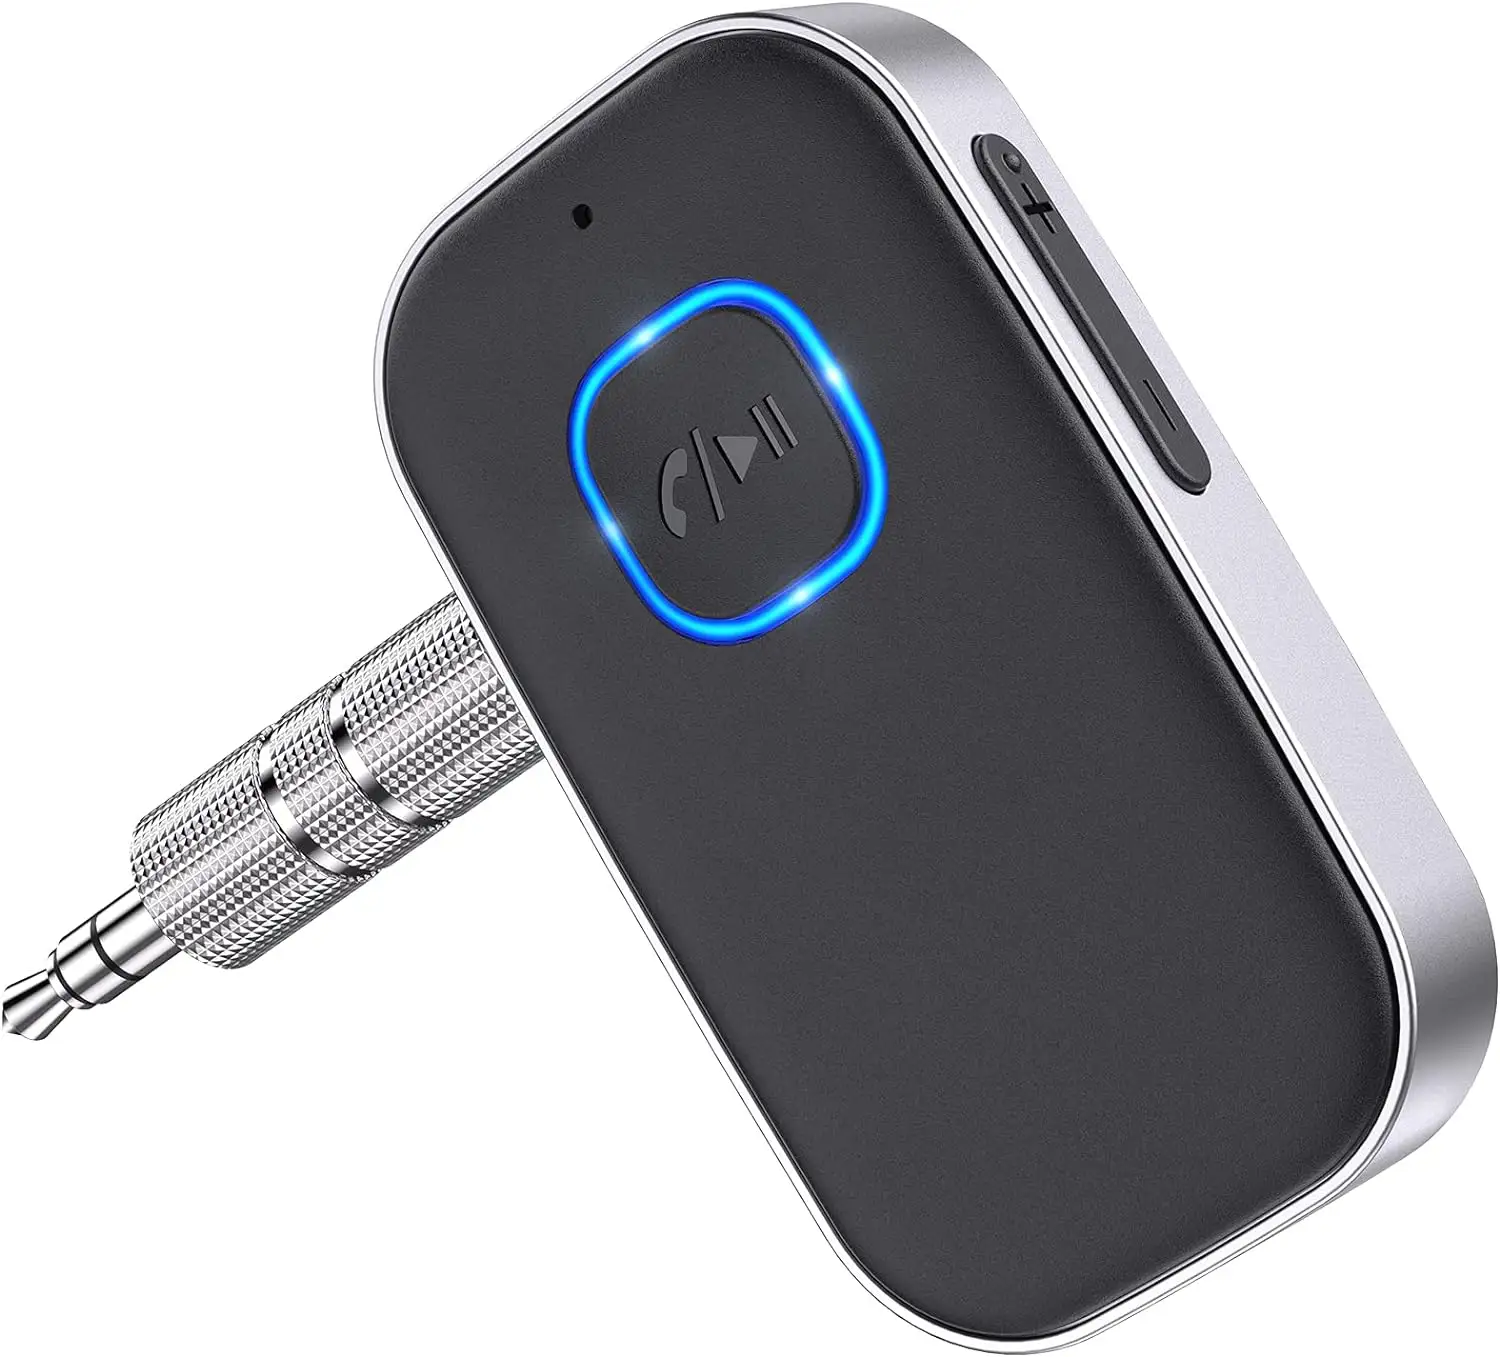 Araba için Bluetooth alıcısı, gürültü iptal için 3.5mm AUX Bluetooth araç adaptörü kablosuz ses alıcısı ev Stereo